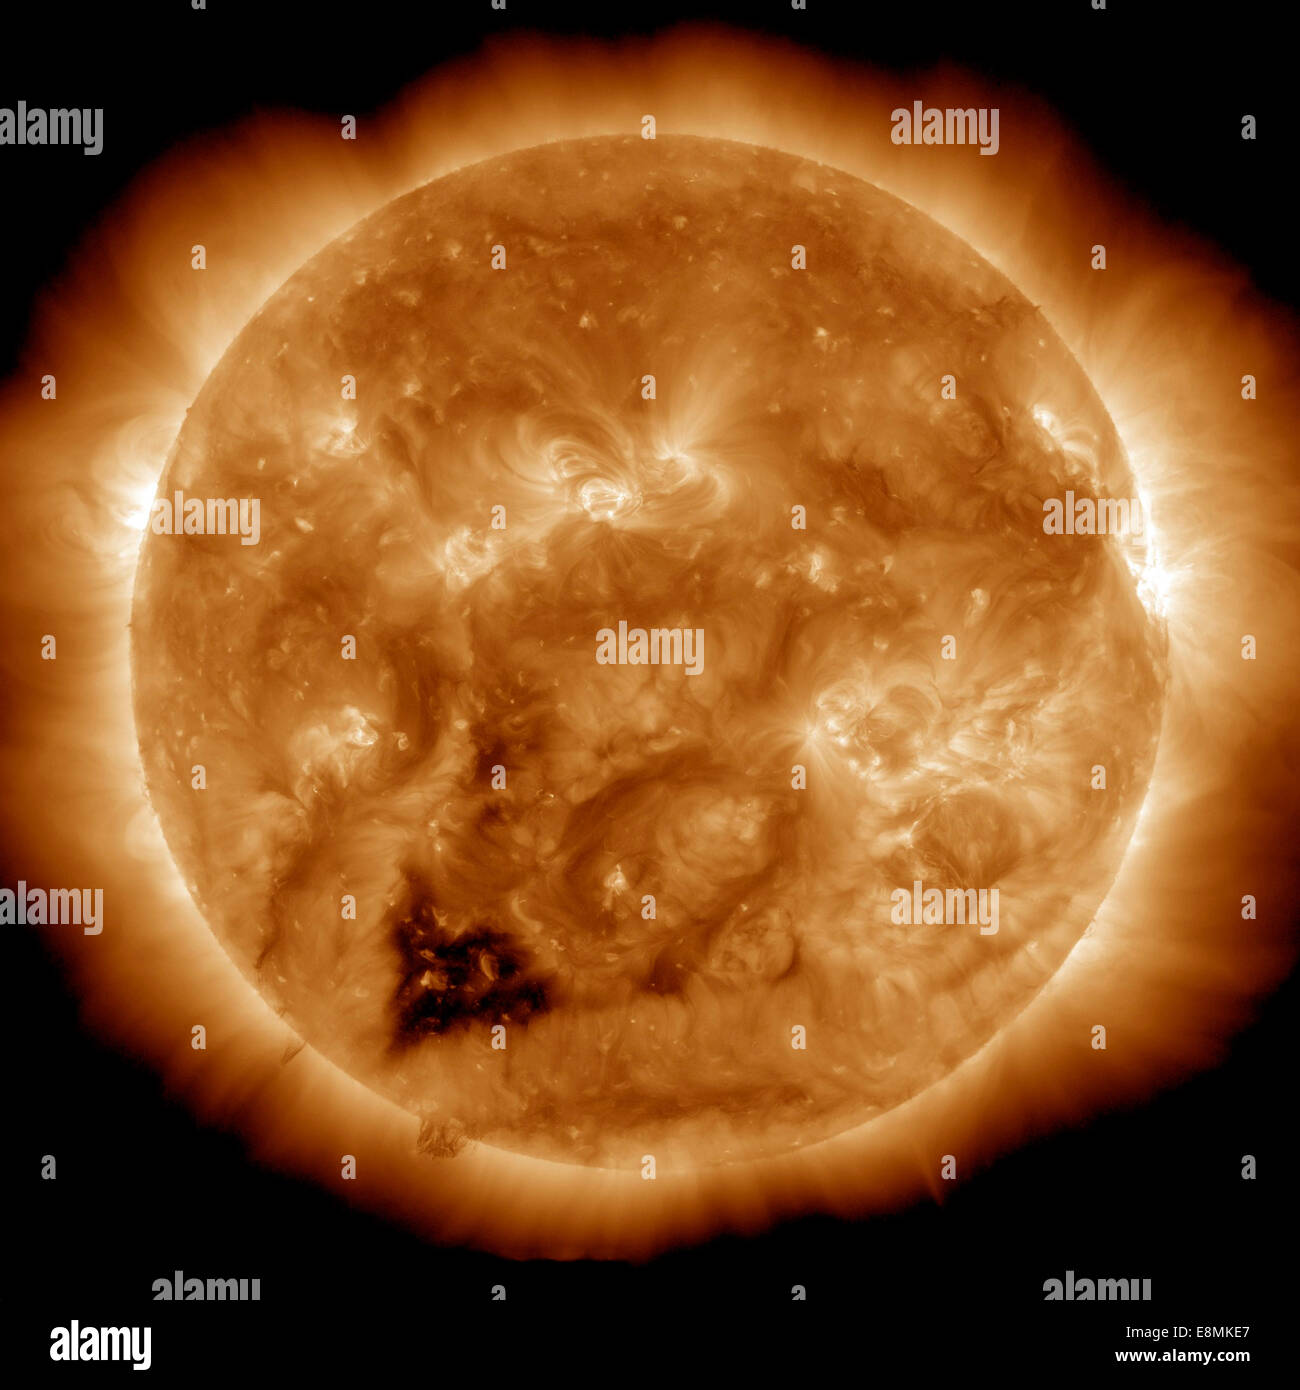 Gennaio 20, 2013 - Immagine del Sole in condizioni estreme di luce ultravioletta acquisisce uno a forma di cuore scuro foro coronale. Fori coronali sono ar Foto Stock